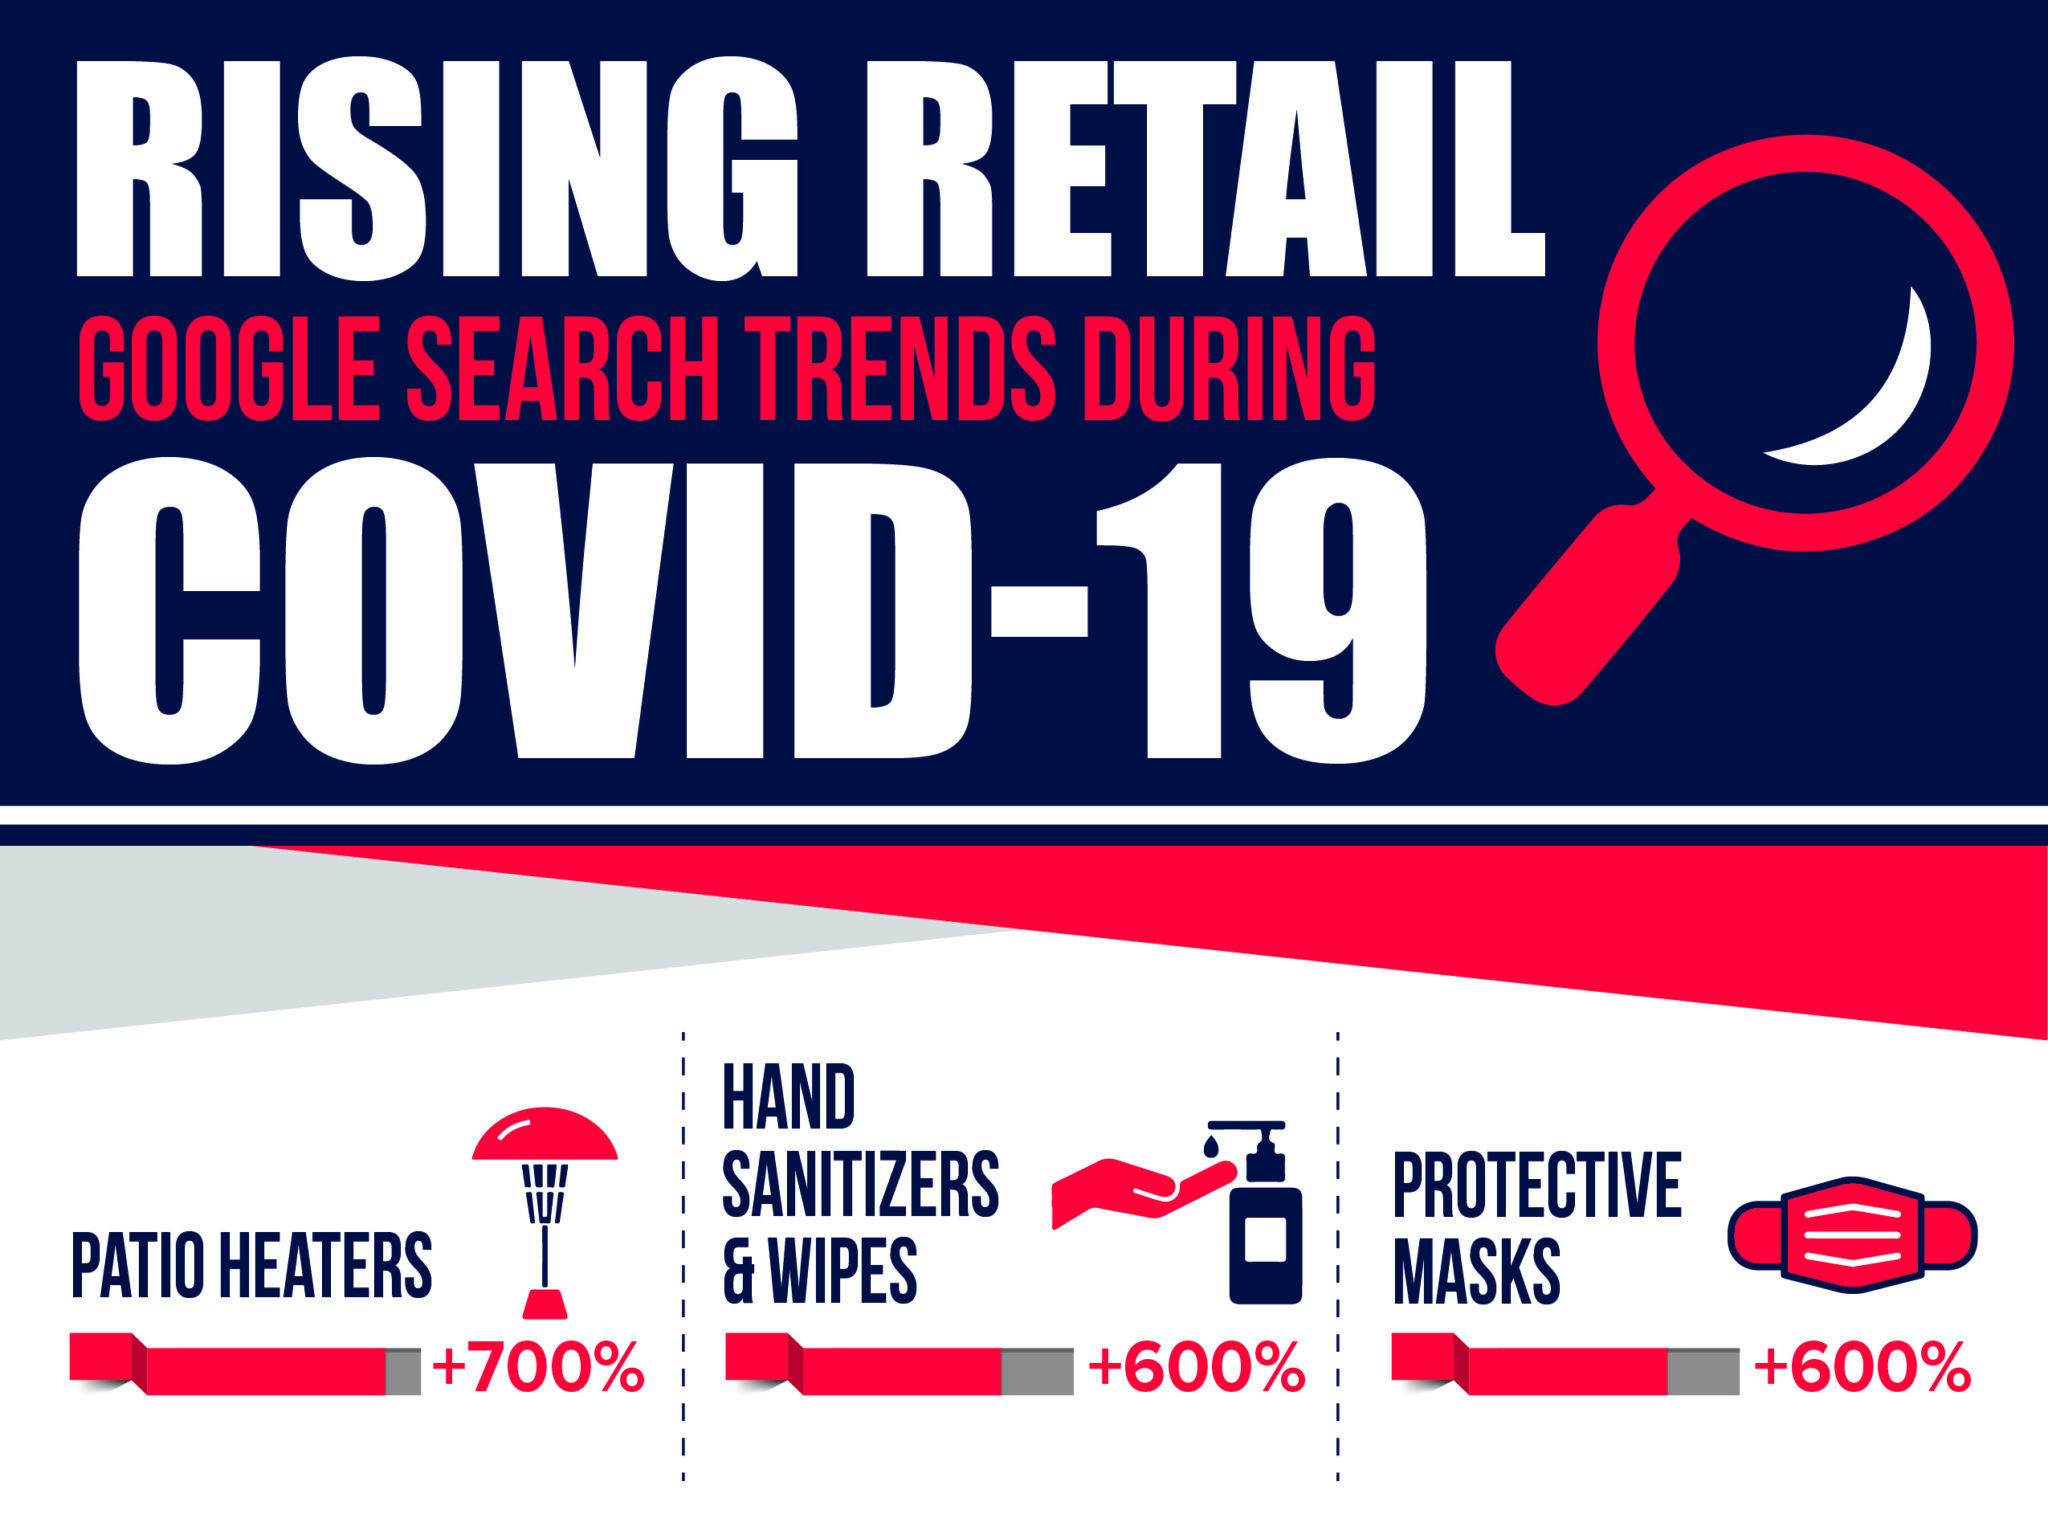 Covid-19 Google Search Trends